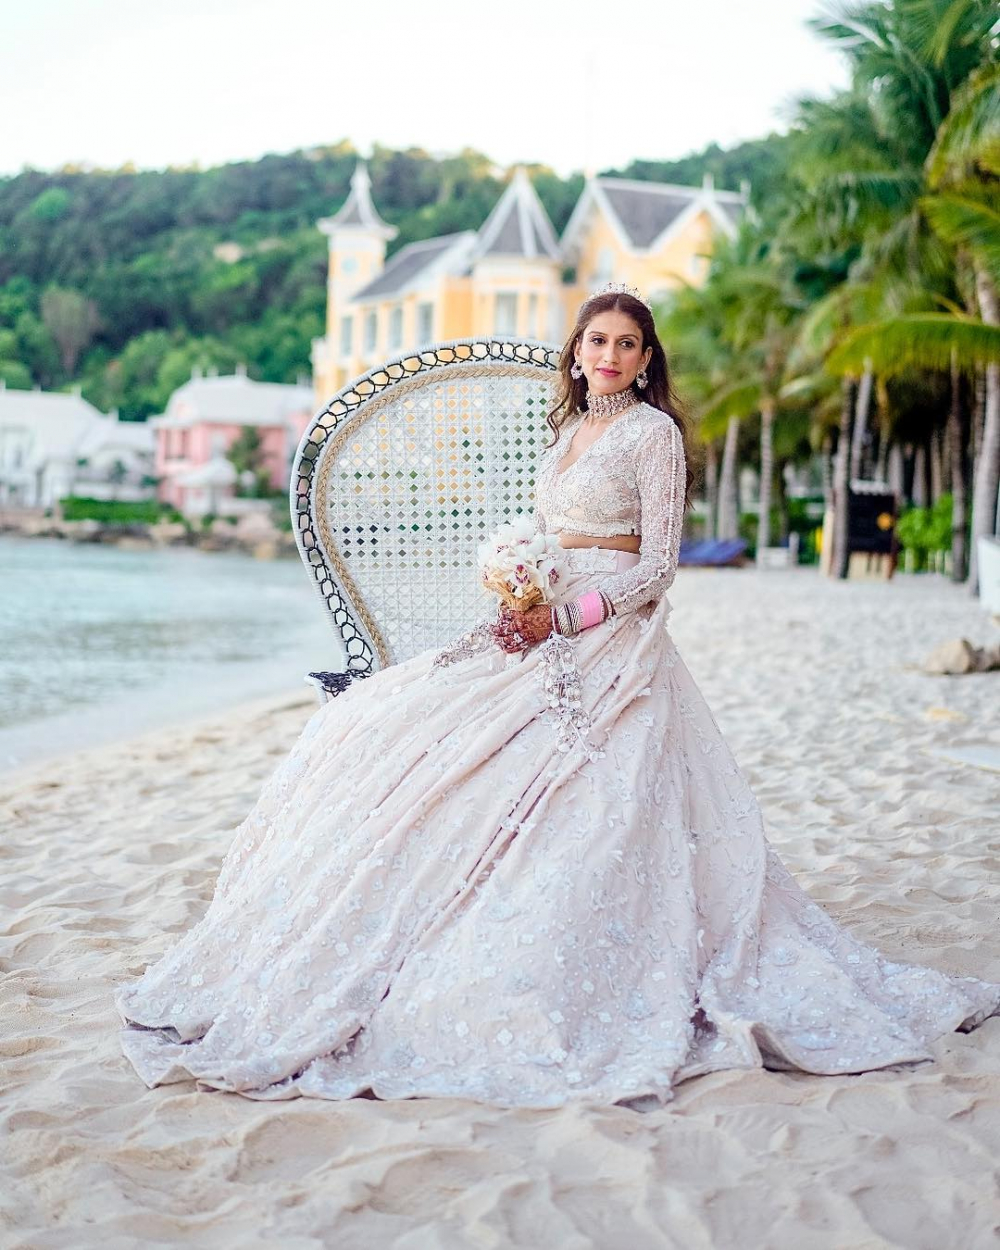 JW Marriott Phu Quoc Emerald Bay trở thành điểm đến của các đám cưới triệu đô